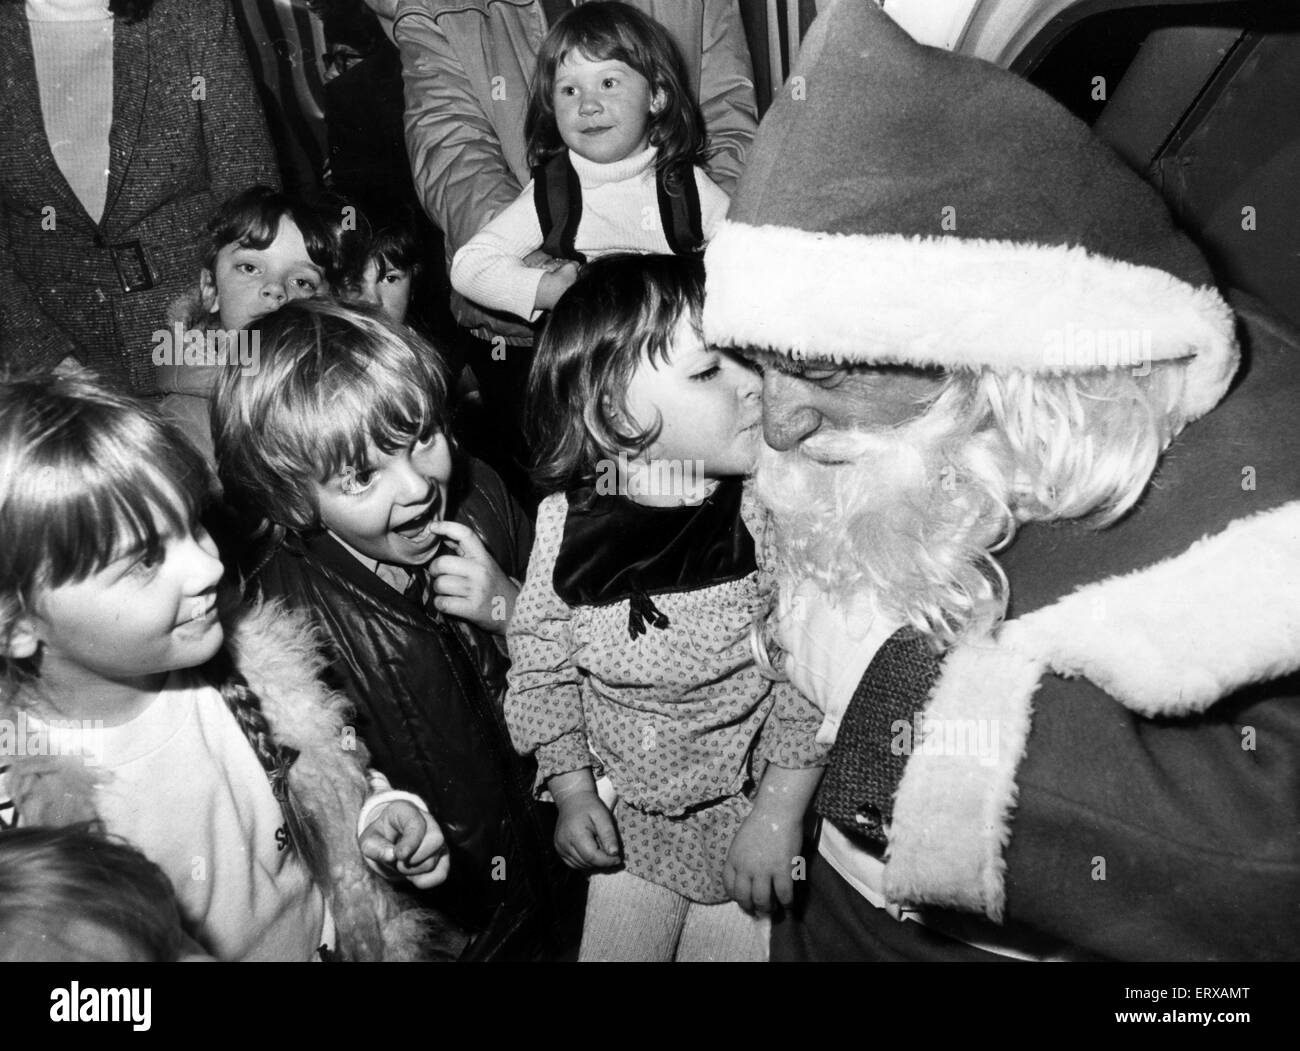 Santa's grotto, Howells Department Store, St Mary Street en Cardiff, Gales. 12 de noviembre de 1981. 3 año de edad Elissa pollas cumple el Padre Navidad. Foto de stock